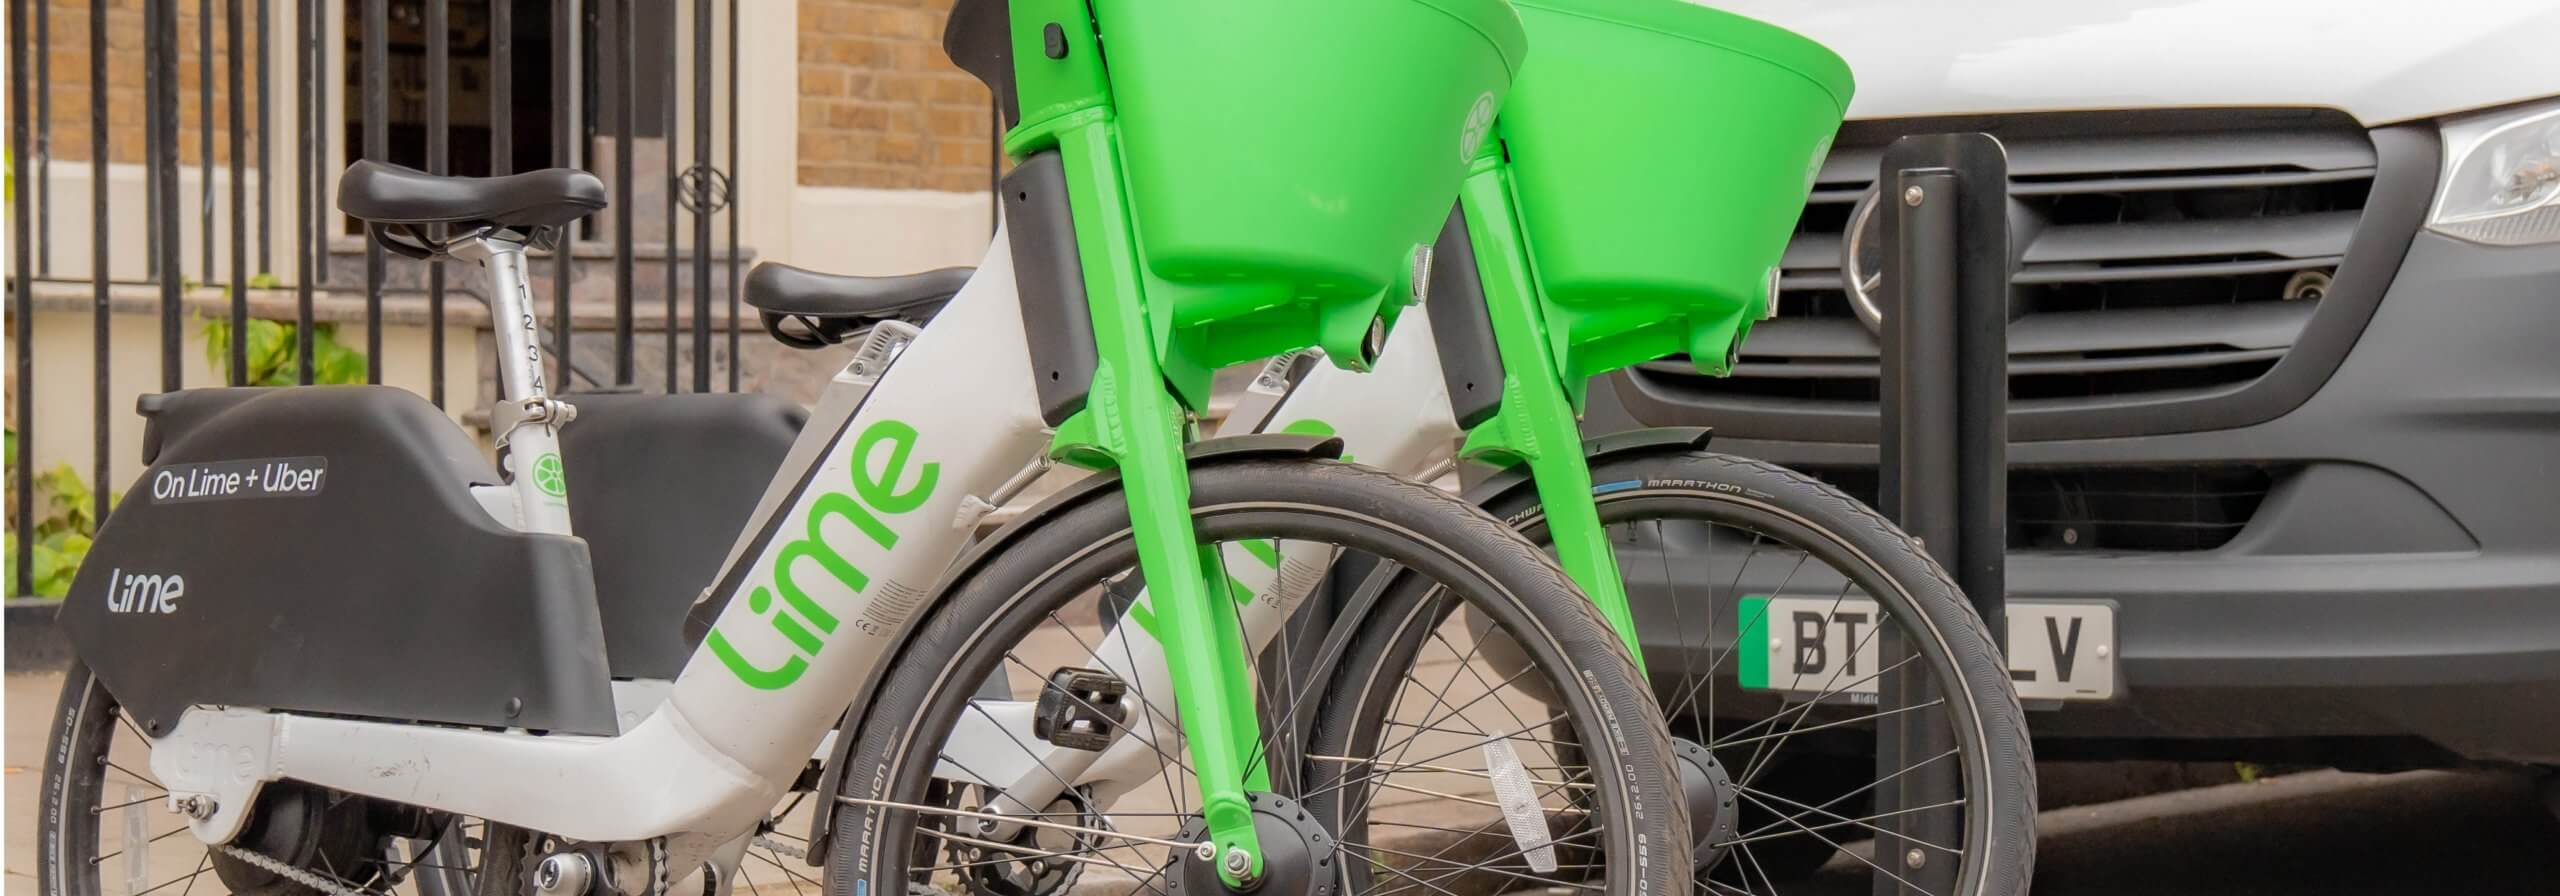 Rental electric bike Lime